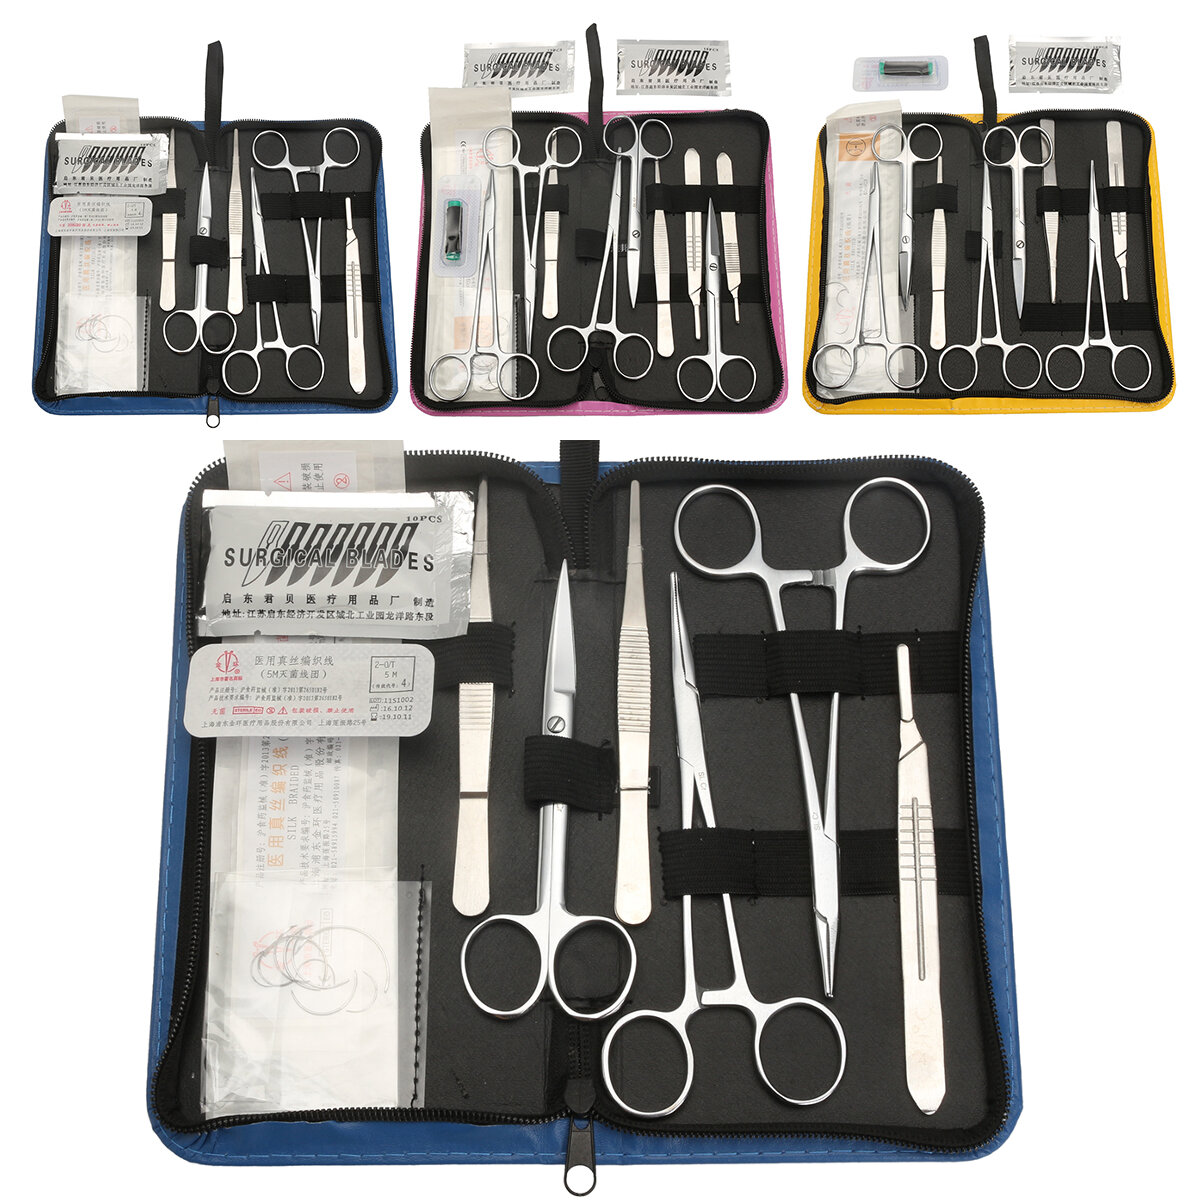 Kit de práctica de sutura que incluye un paquete de curso de sutura desarrollado profesionalmente y una bolsa de herramientas.